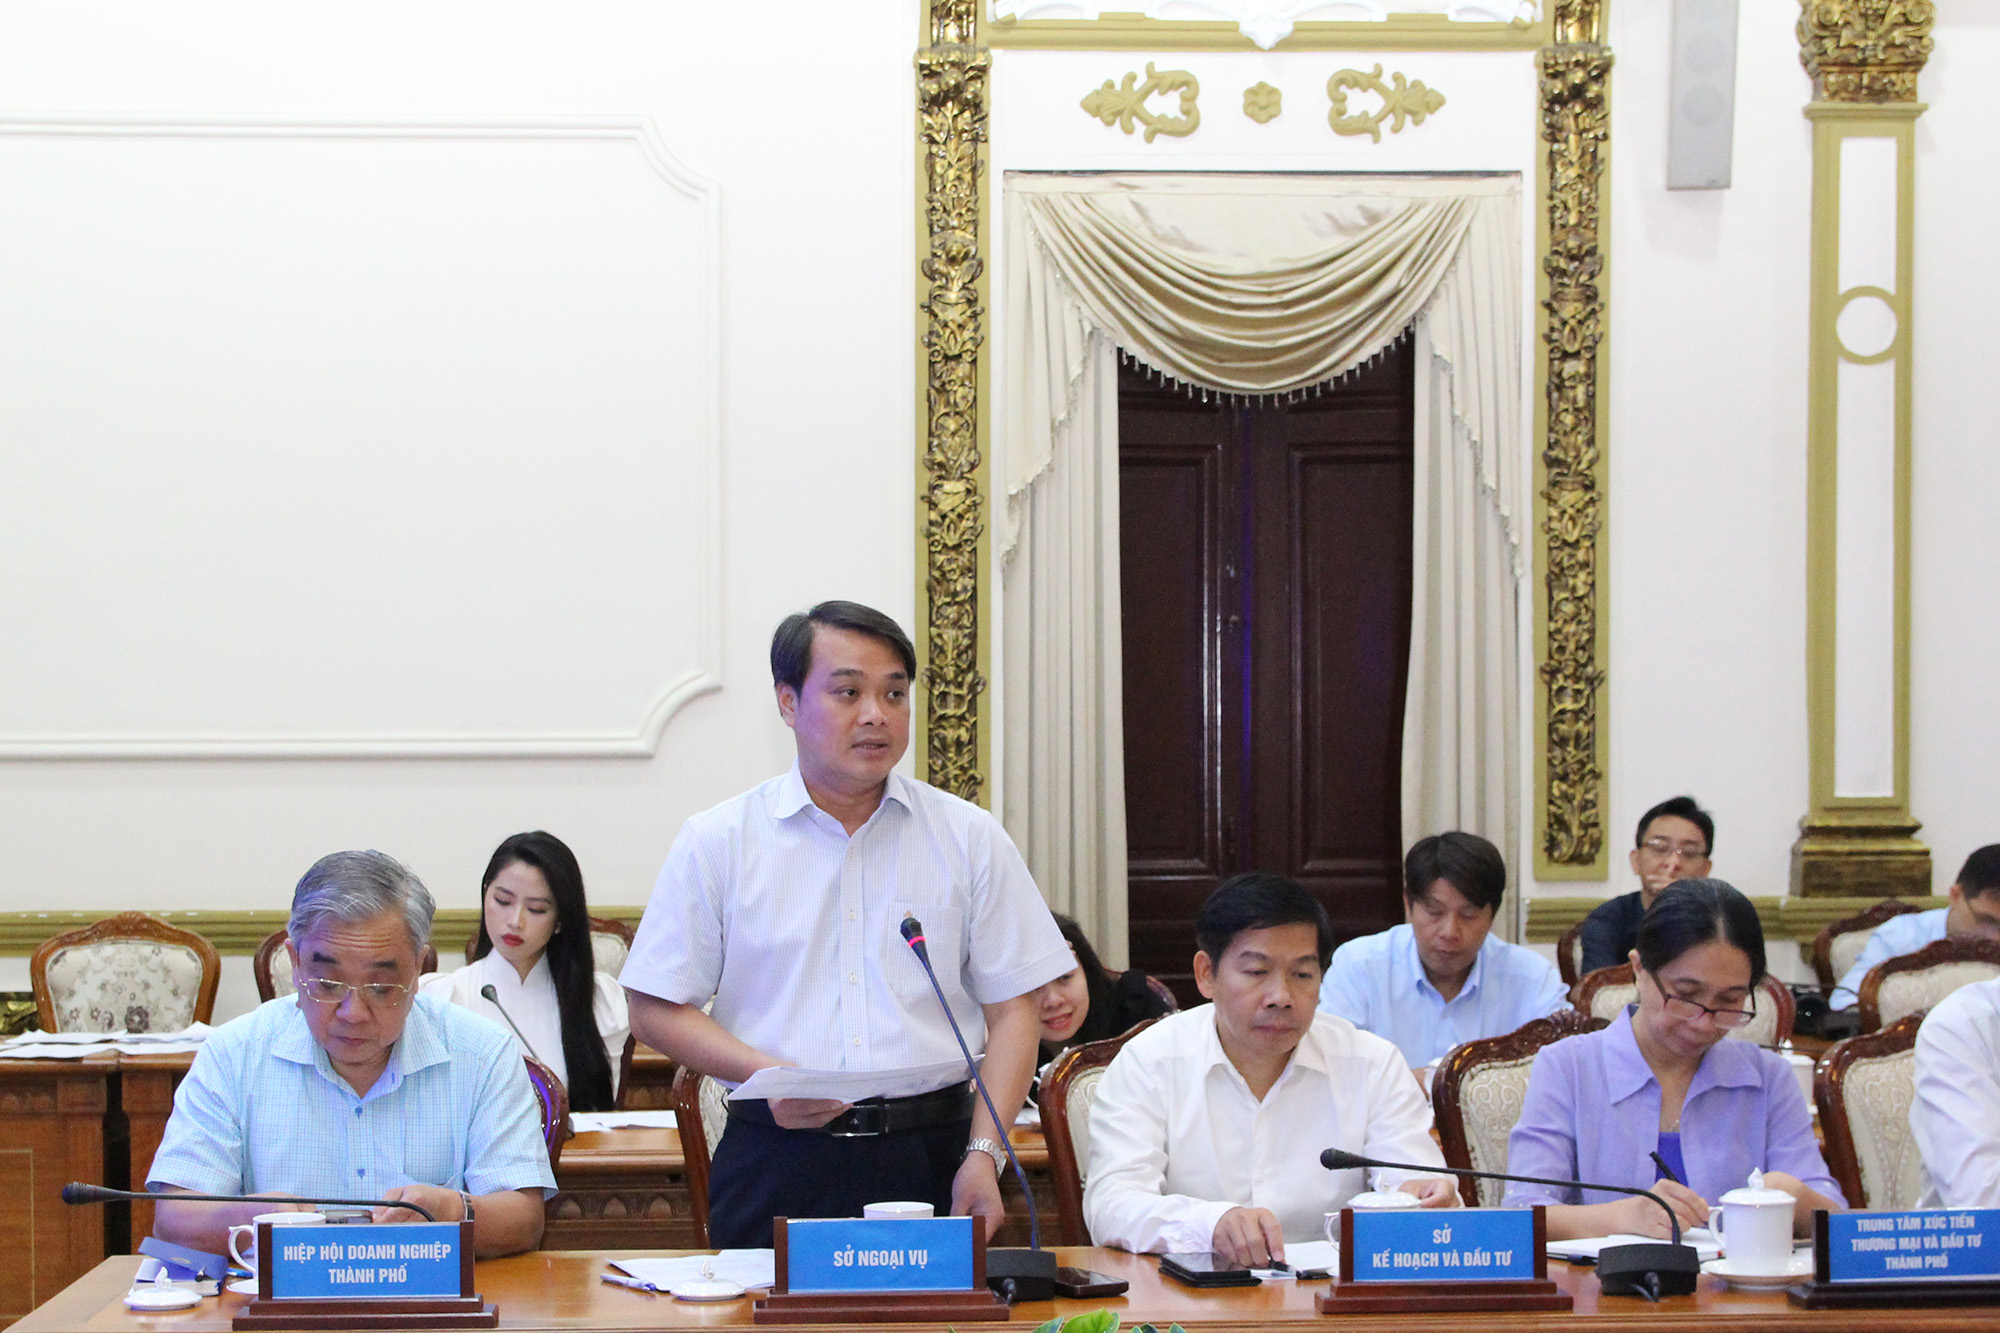 2; Đồng chí Lê Trường Duy – Tập sự Phó Giám đốc Sở Ngoại vụ TP. Hồ Chí Minh (đứng) phát biểu tại buổi họp báo.